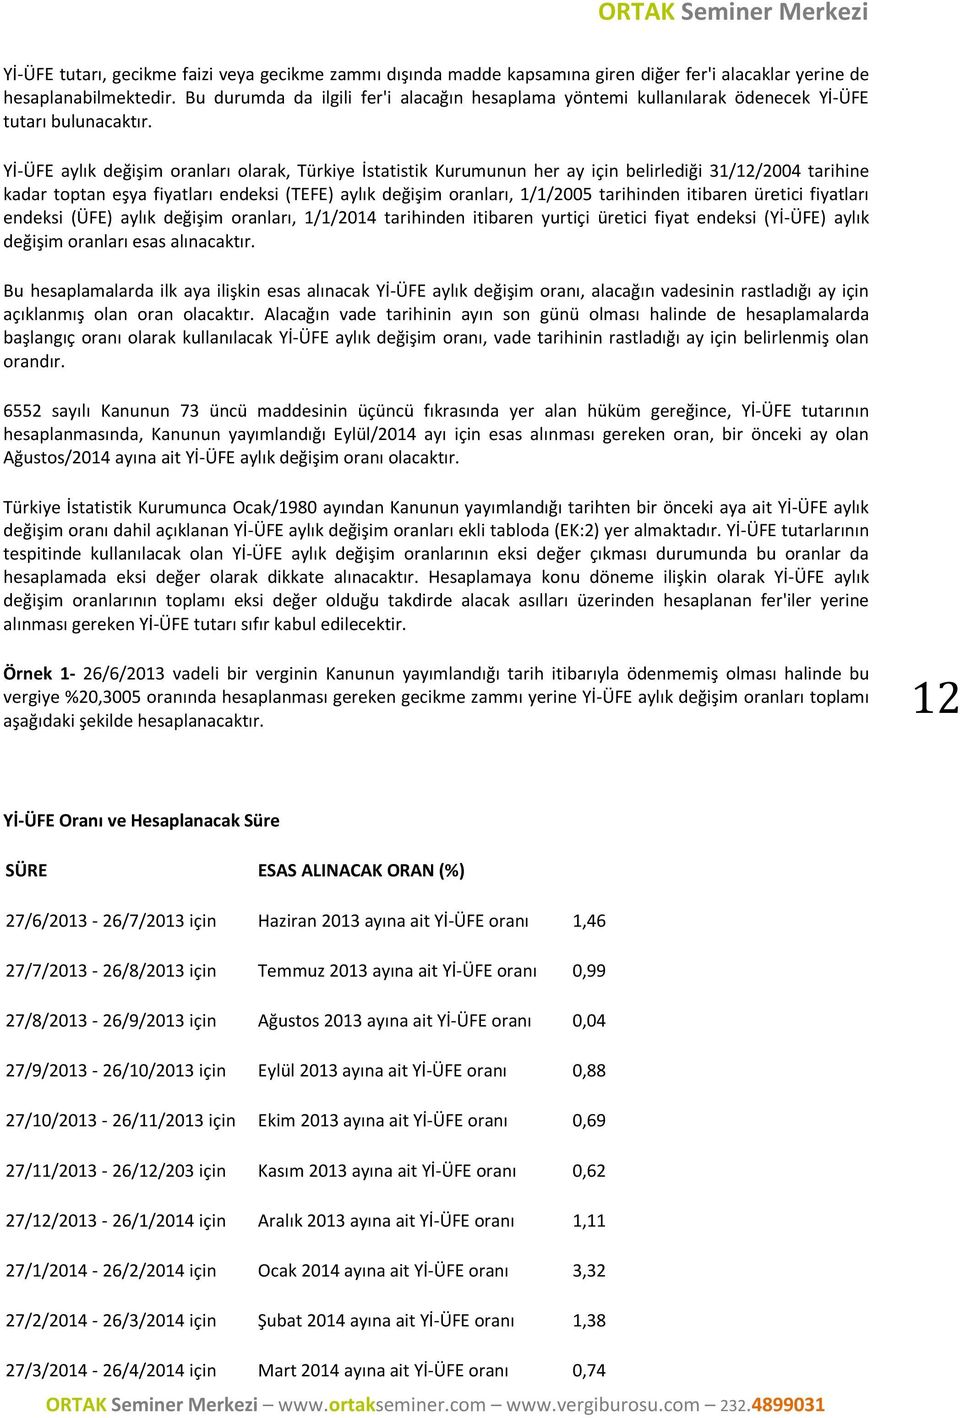 Yİ-ÜFE aylık değişim oranları olarak, Türkiye İstatistik Kurumunun her ay için belirlediği 31/12/2004 tarihine kadar toptan eşya fiyatları endeksi (TEFE) aylık değişim oranları, 1/1/2005 tarihinden